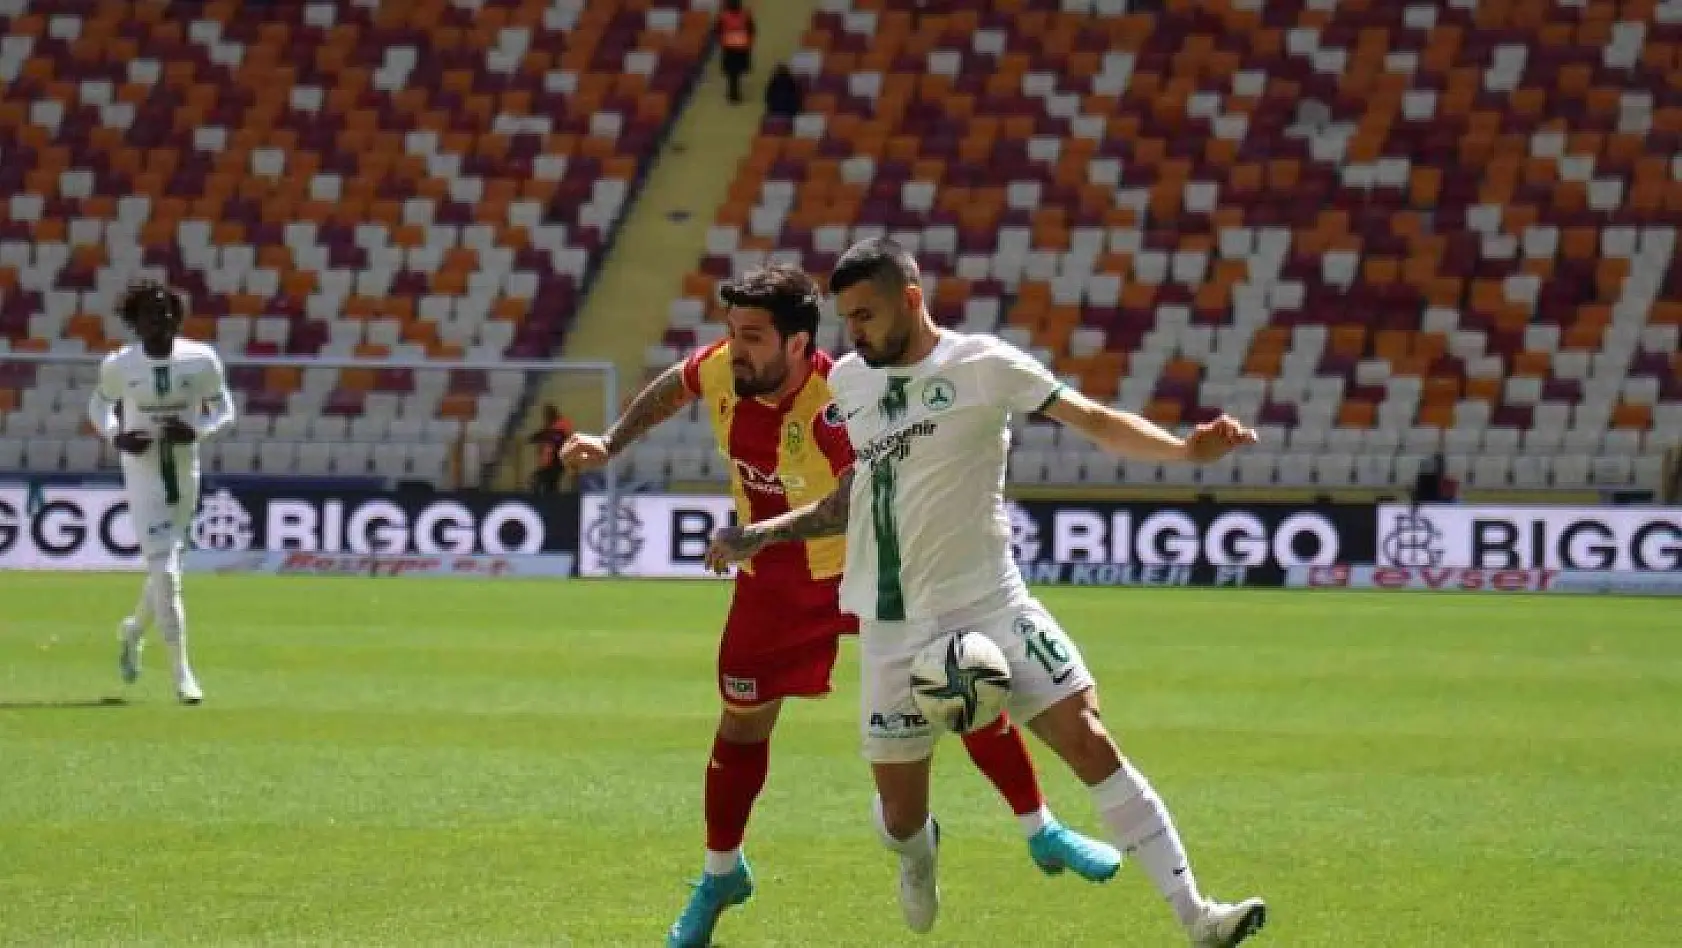 Spor Toto Süper Lig: Yeni Malatyaspor: 0 - GZT Giresunspor: 1 (İlk yarı)